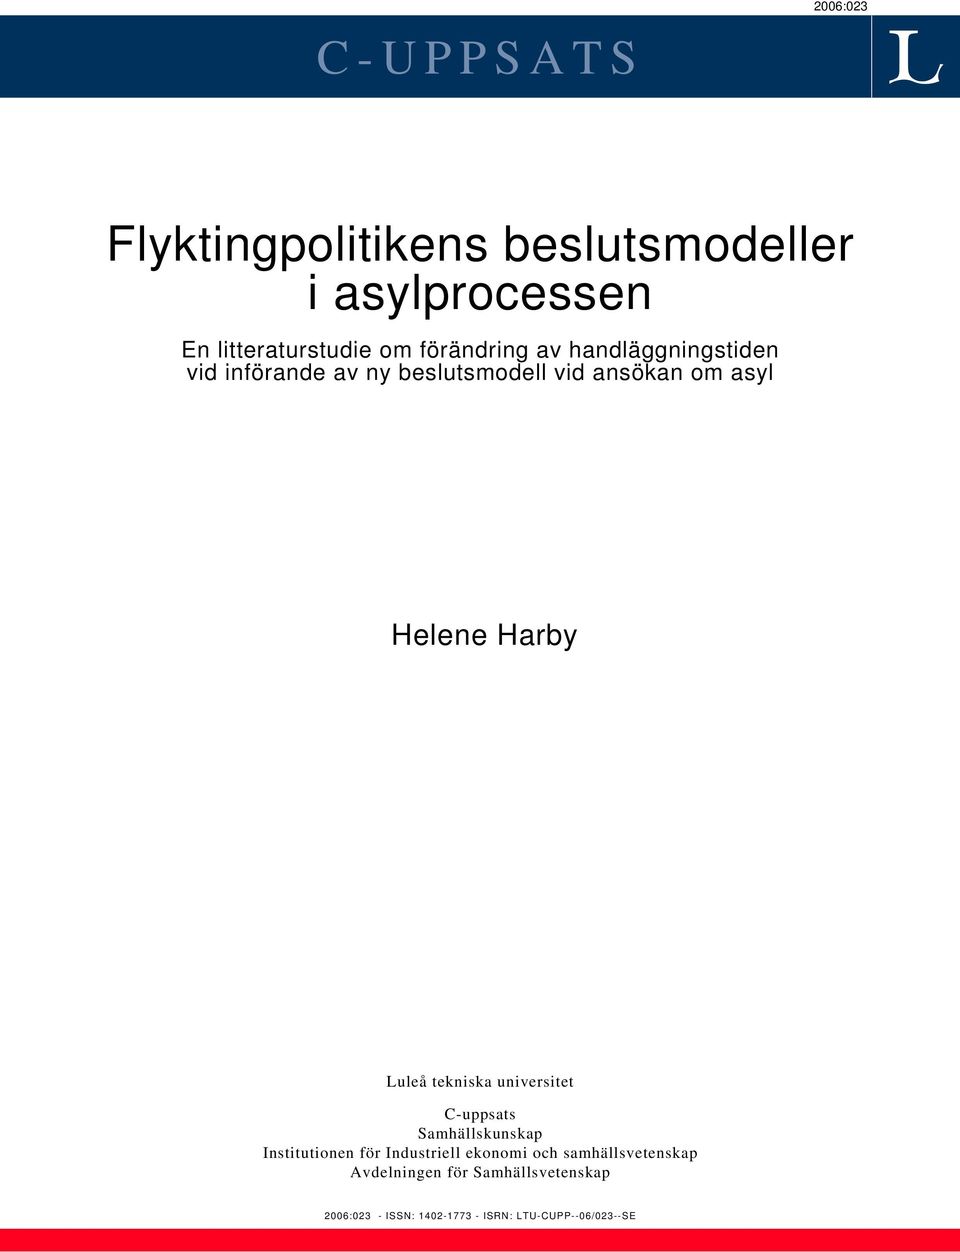 Harby Luleå tekniska universitet C-uppsats Samhällskunskap Institutionen för Industriell ekonomi